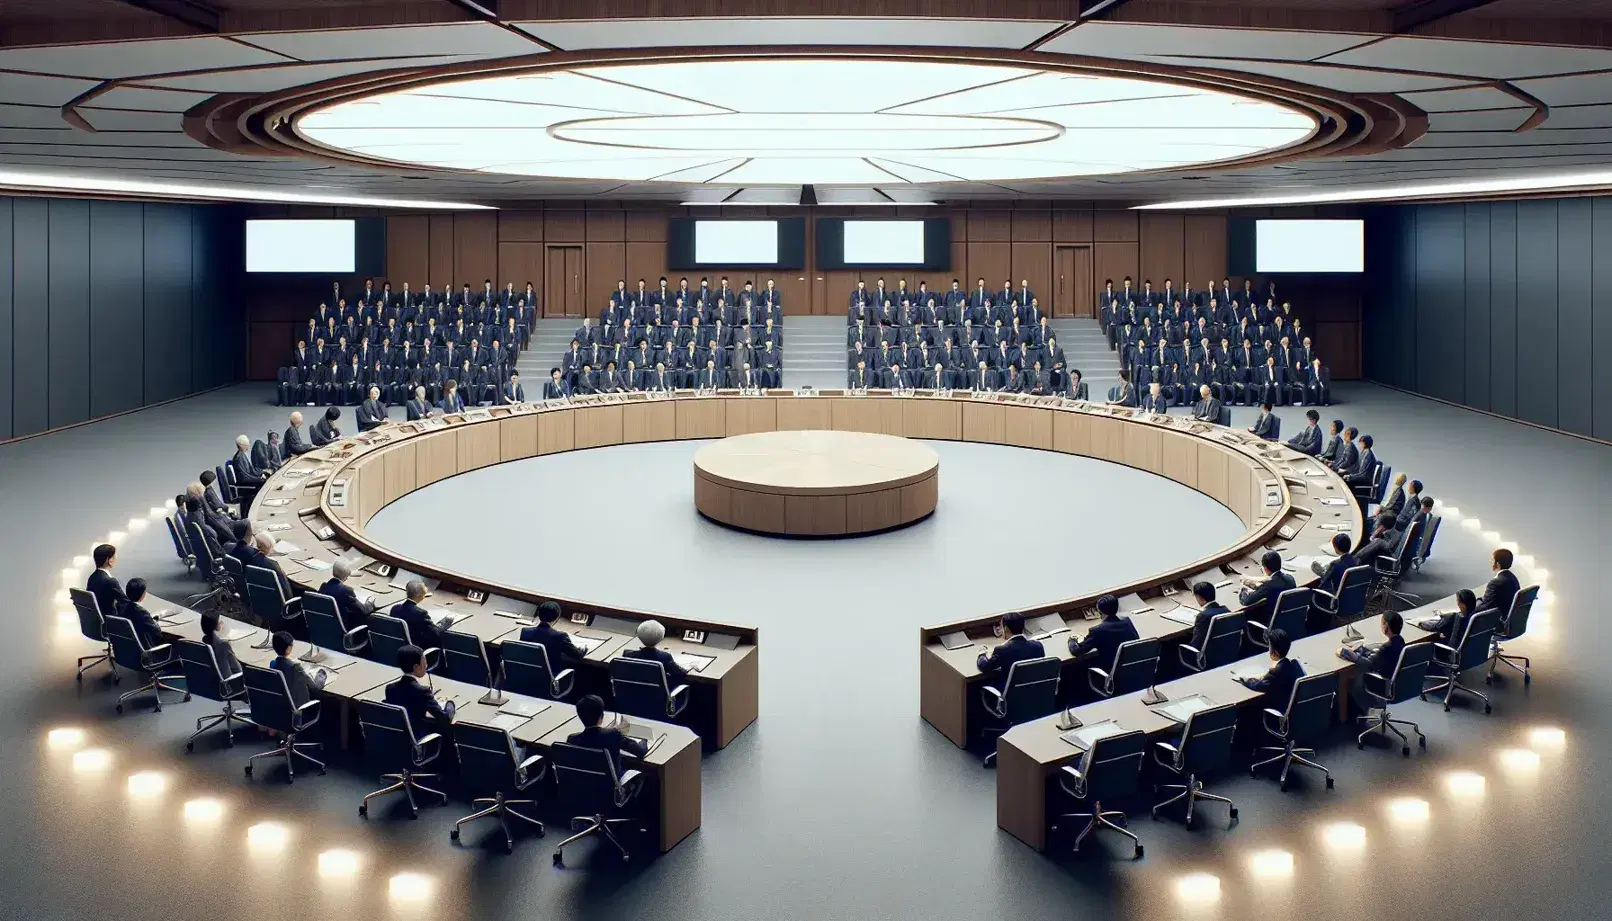 Sala de conferencias amplia con asientos azul oscuro, mesa semicircular de madera, podio y pizarrón blanco, iluminada artificialmente.